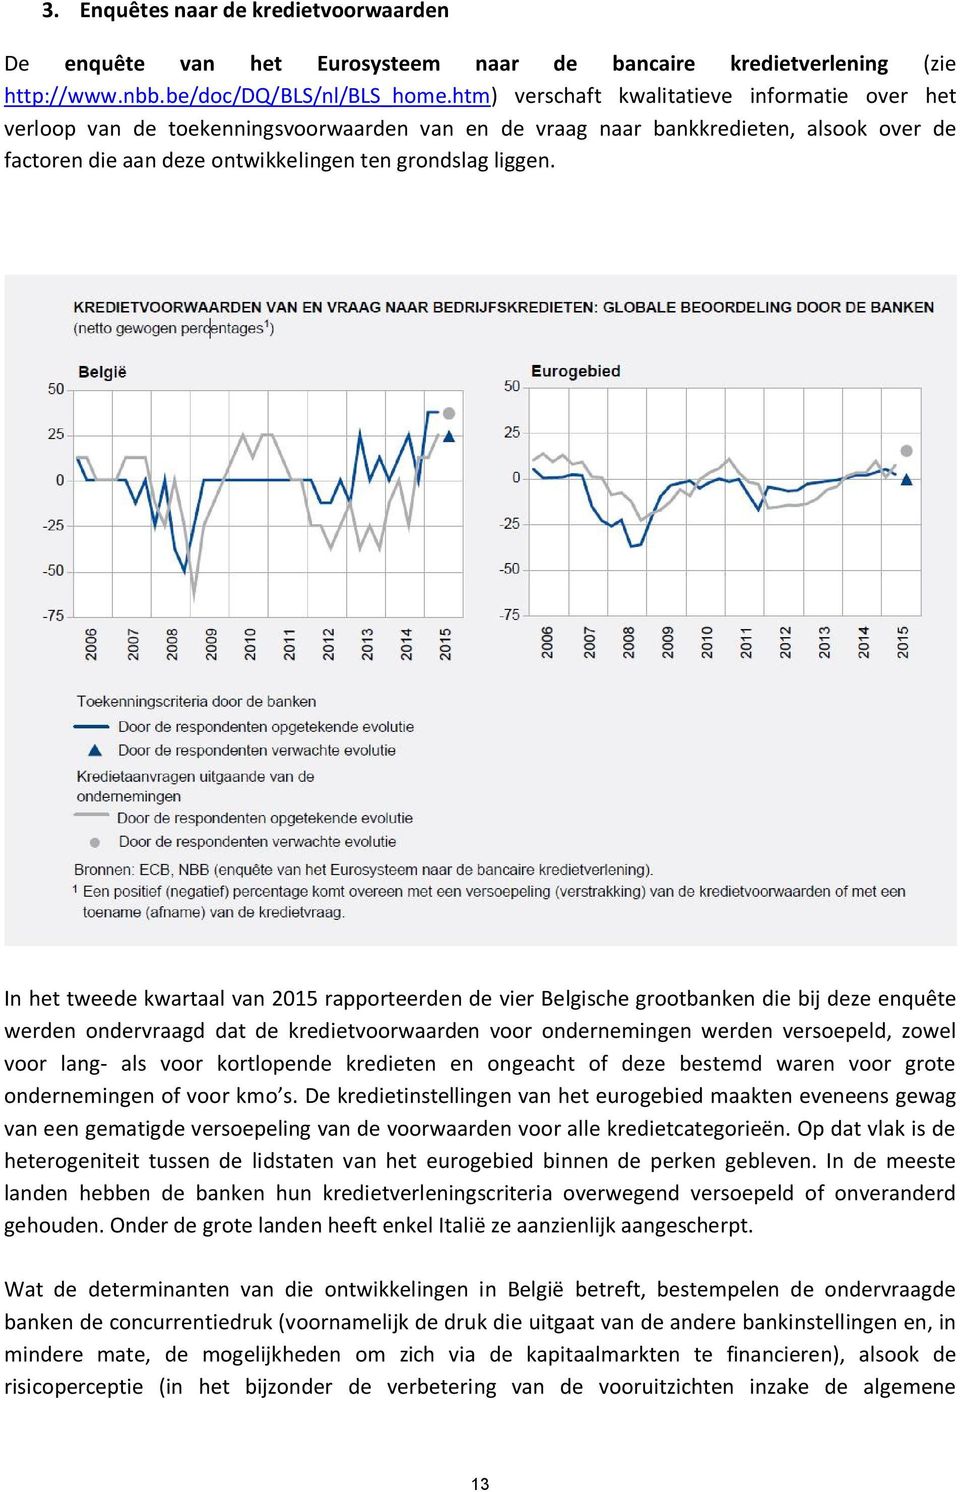 In het tweede kwartaal van 2015 rapporteerden de vier Belgische grootbanken die bij deze enquête werden ondervraagd dat de kredietvoorwaarden voor ondernemingen werden versoepeld, zowel voor lang-